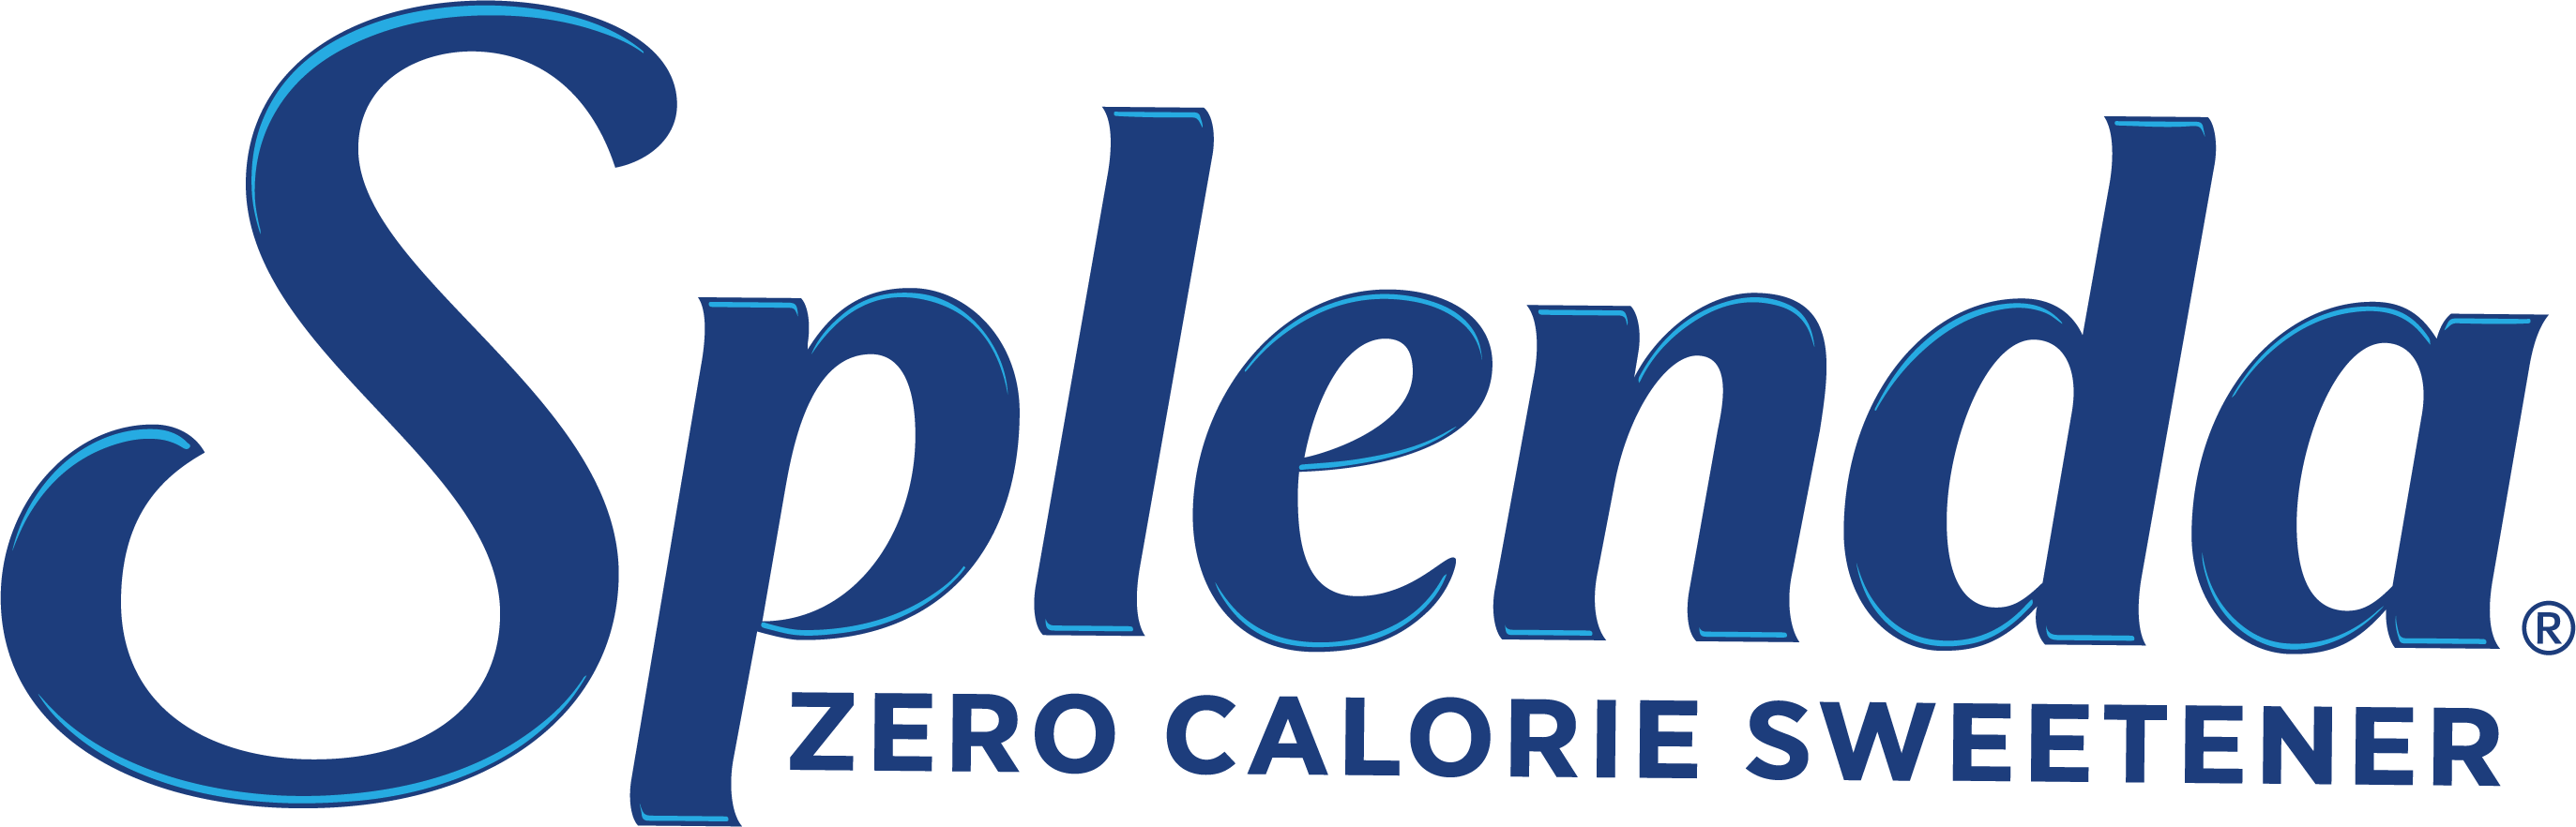 Blue splenda sweetener logo